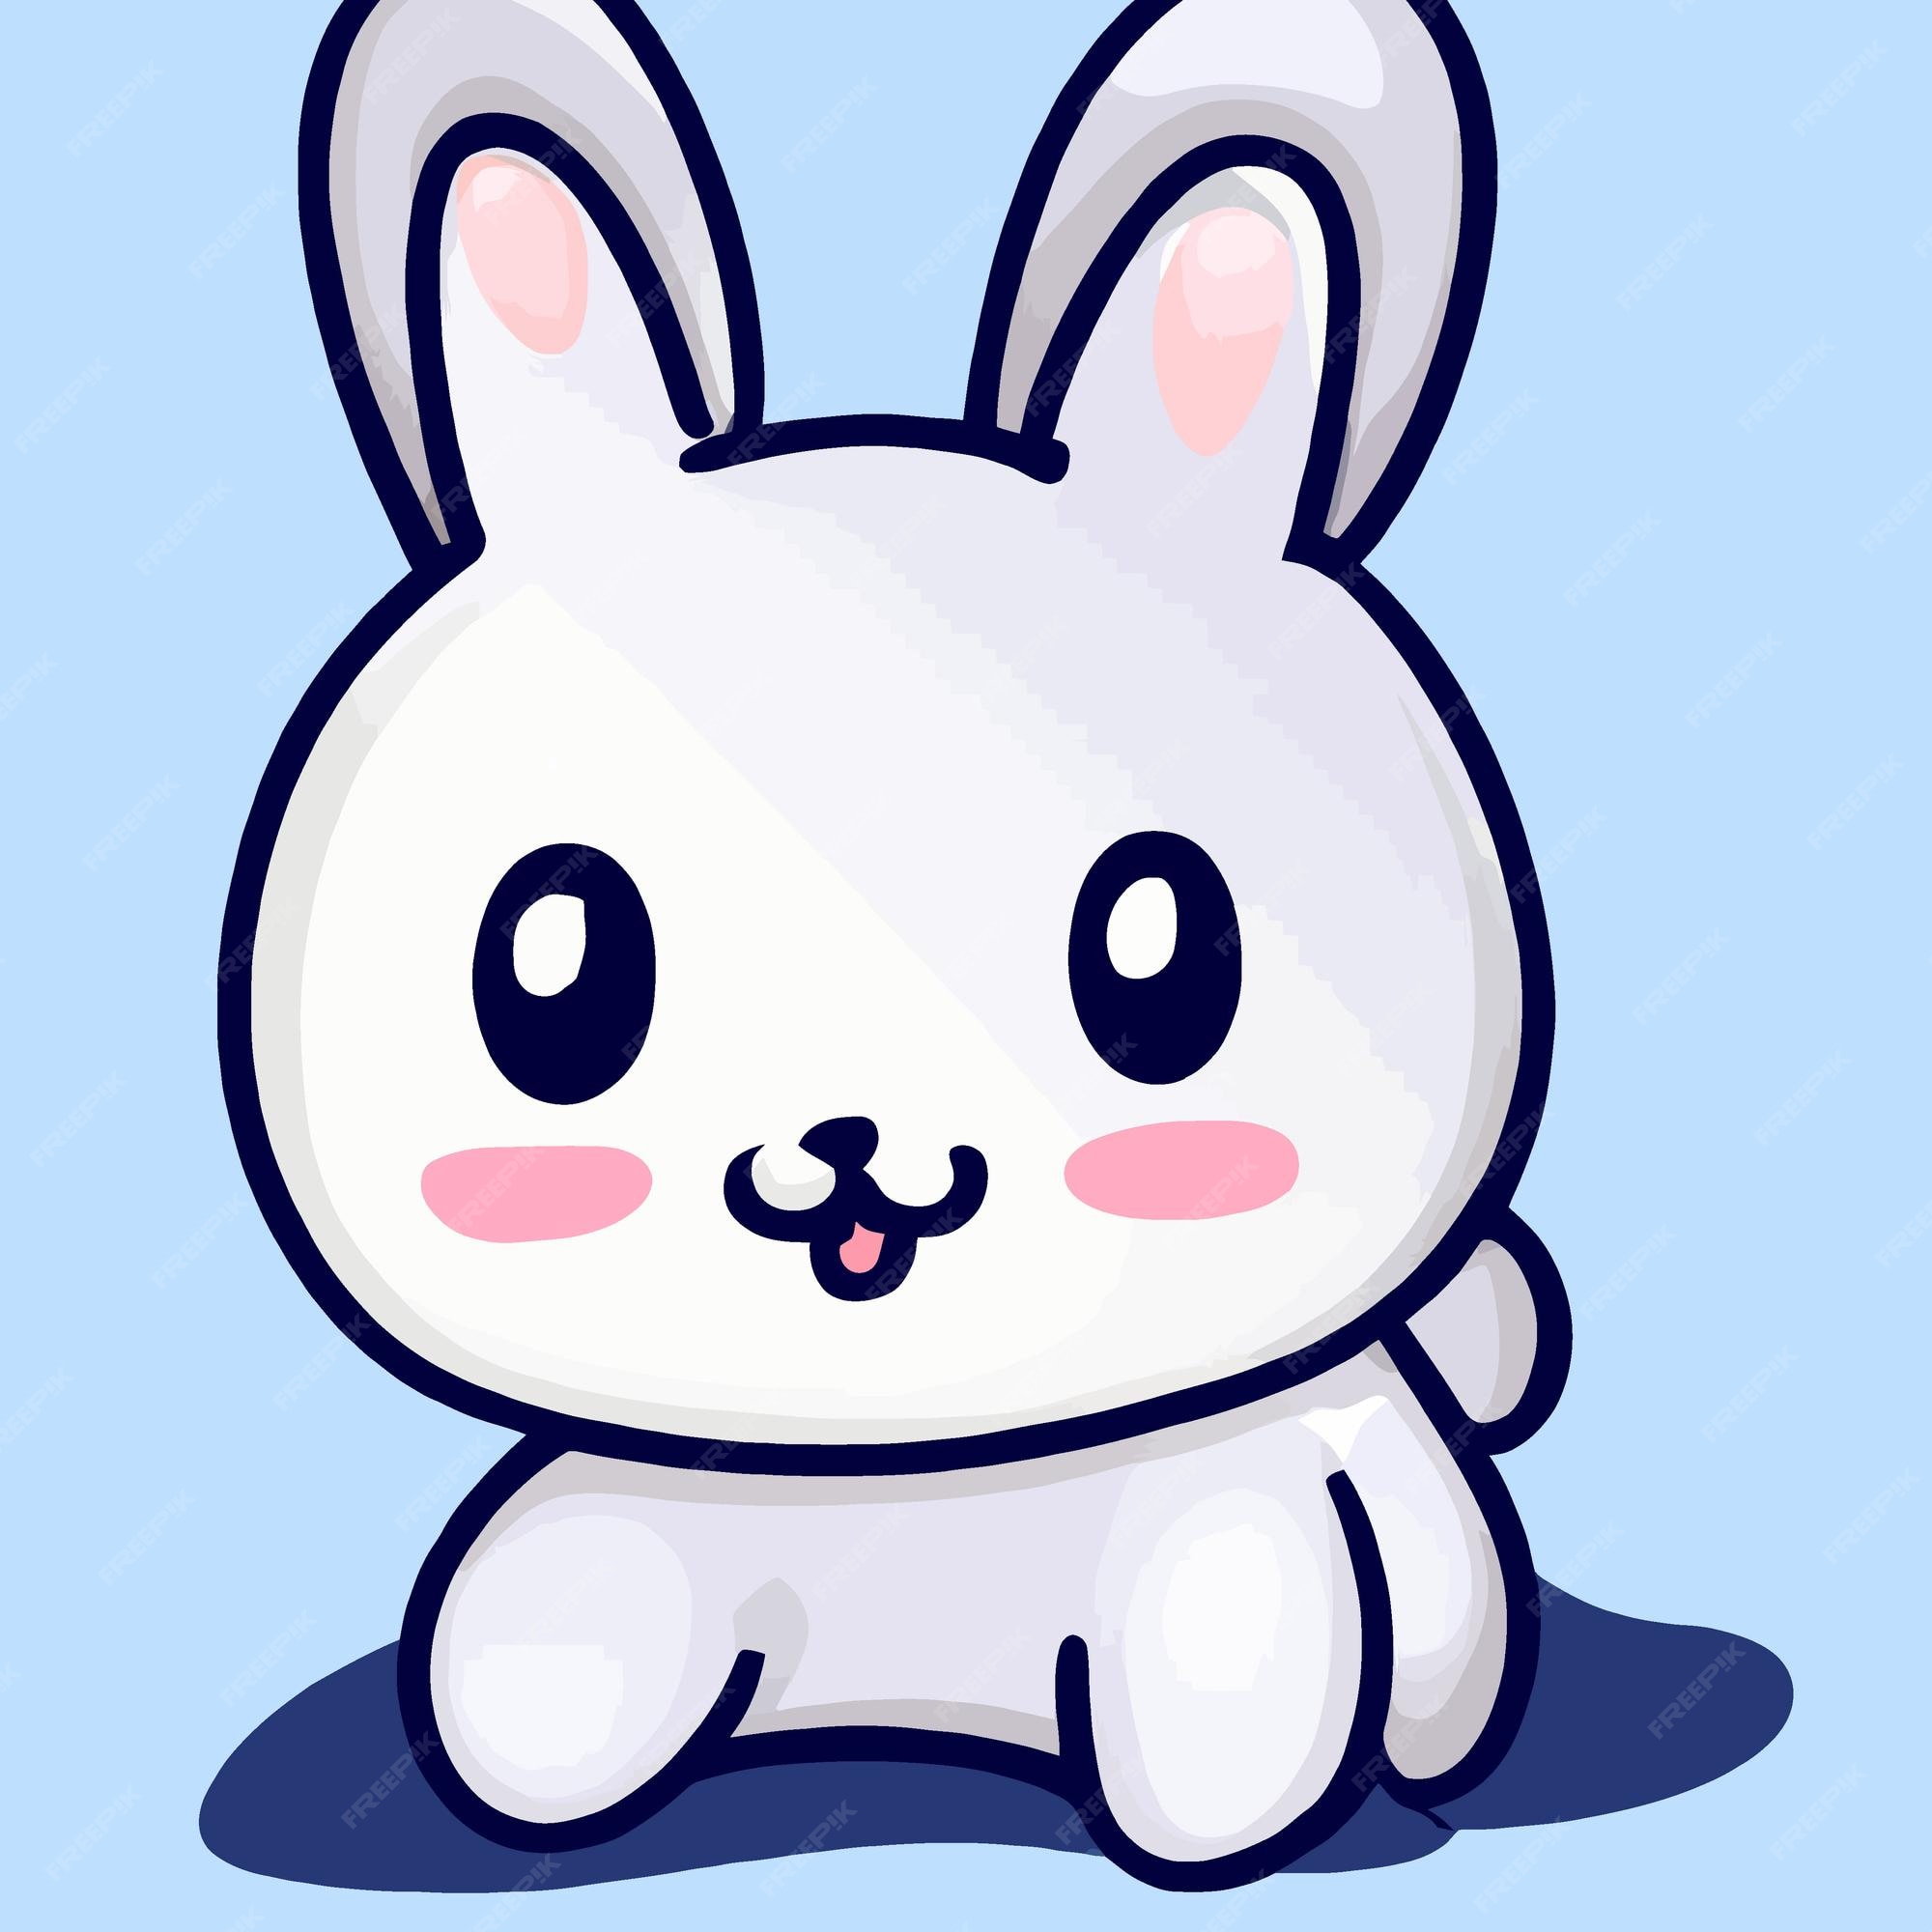 Cute rabbit kawaii chibi drawing style Royalty Free Vector